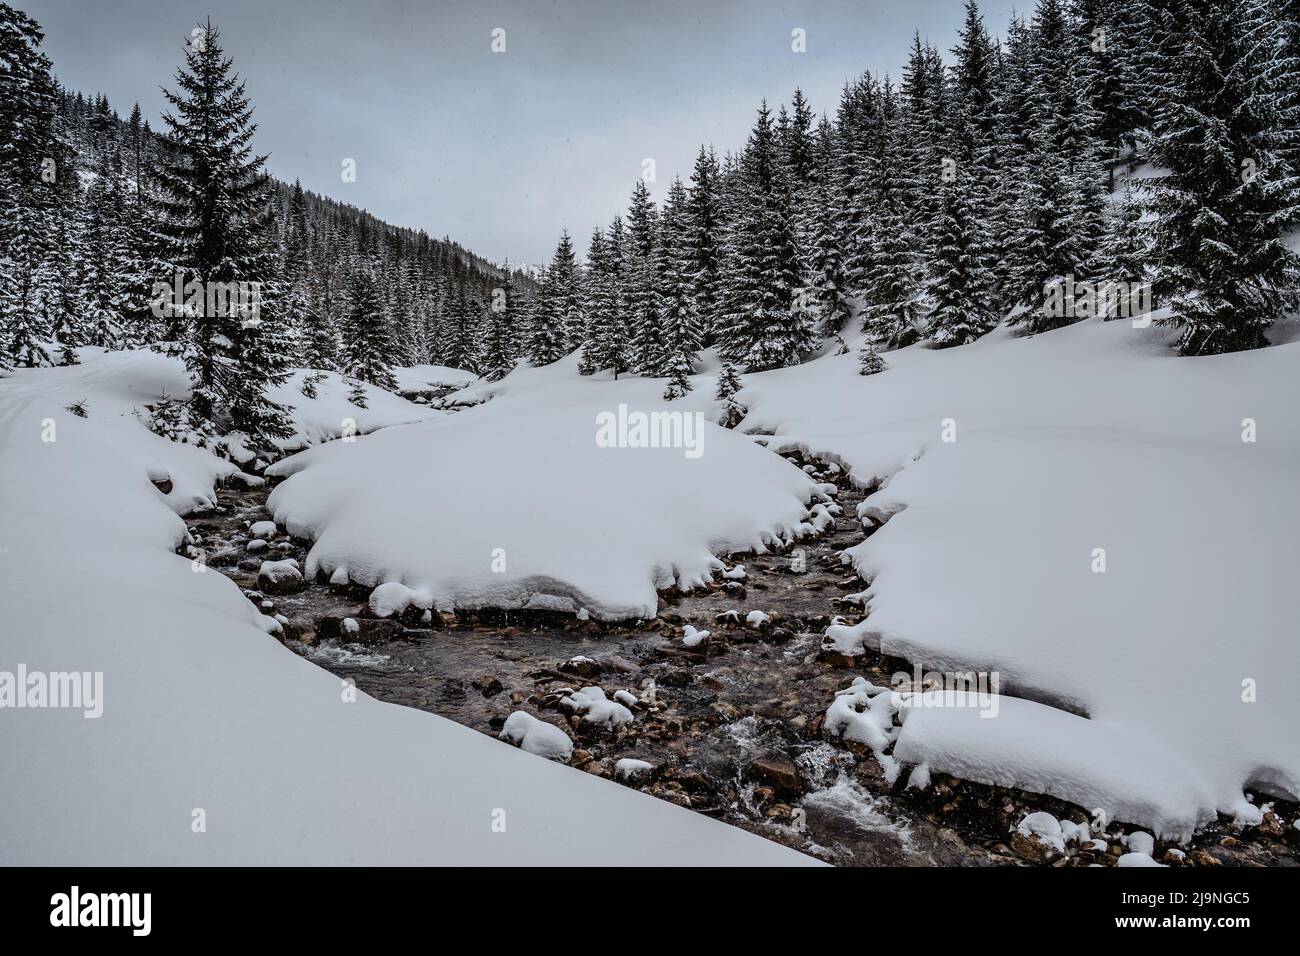 Rivière d'hiver dans les montagnes de Krkonose près de Spindleruv Mlyn,République Tchèque.Snowy paysage gelé.ruisseau sauvage, sérénité, Voyage dans le dos, randonnée dans la N Tchèque Banque D'Images